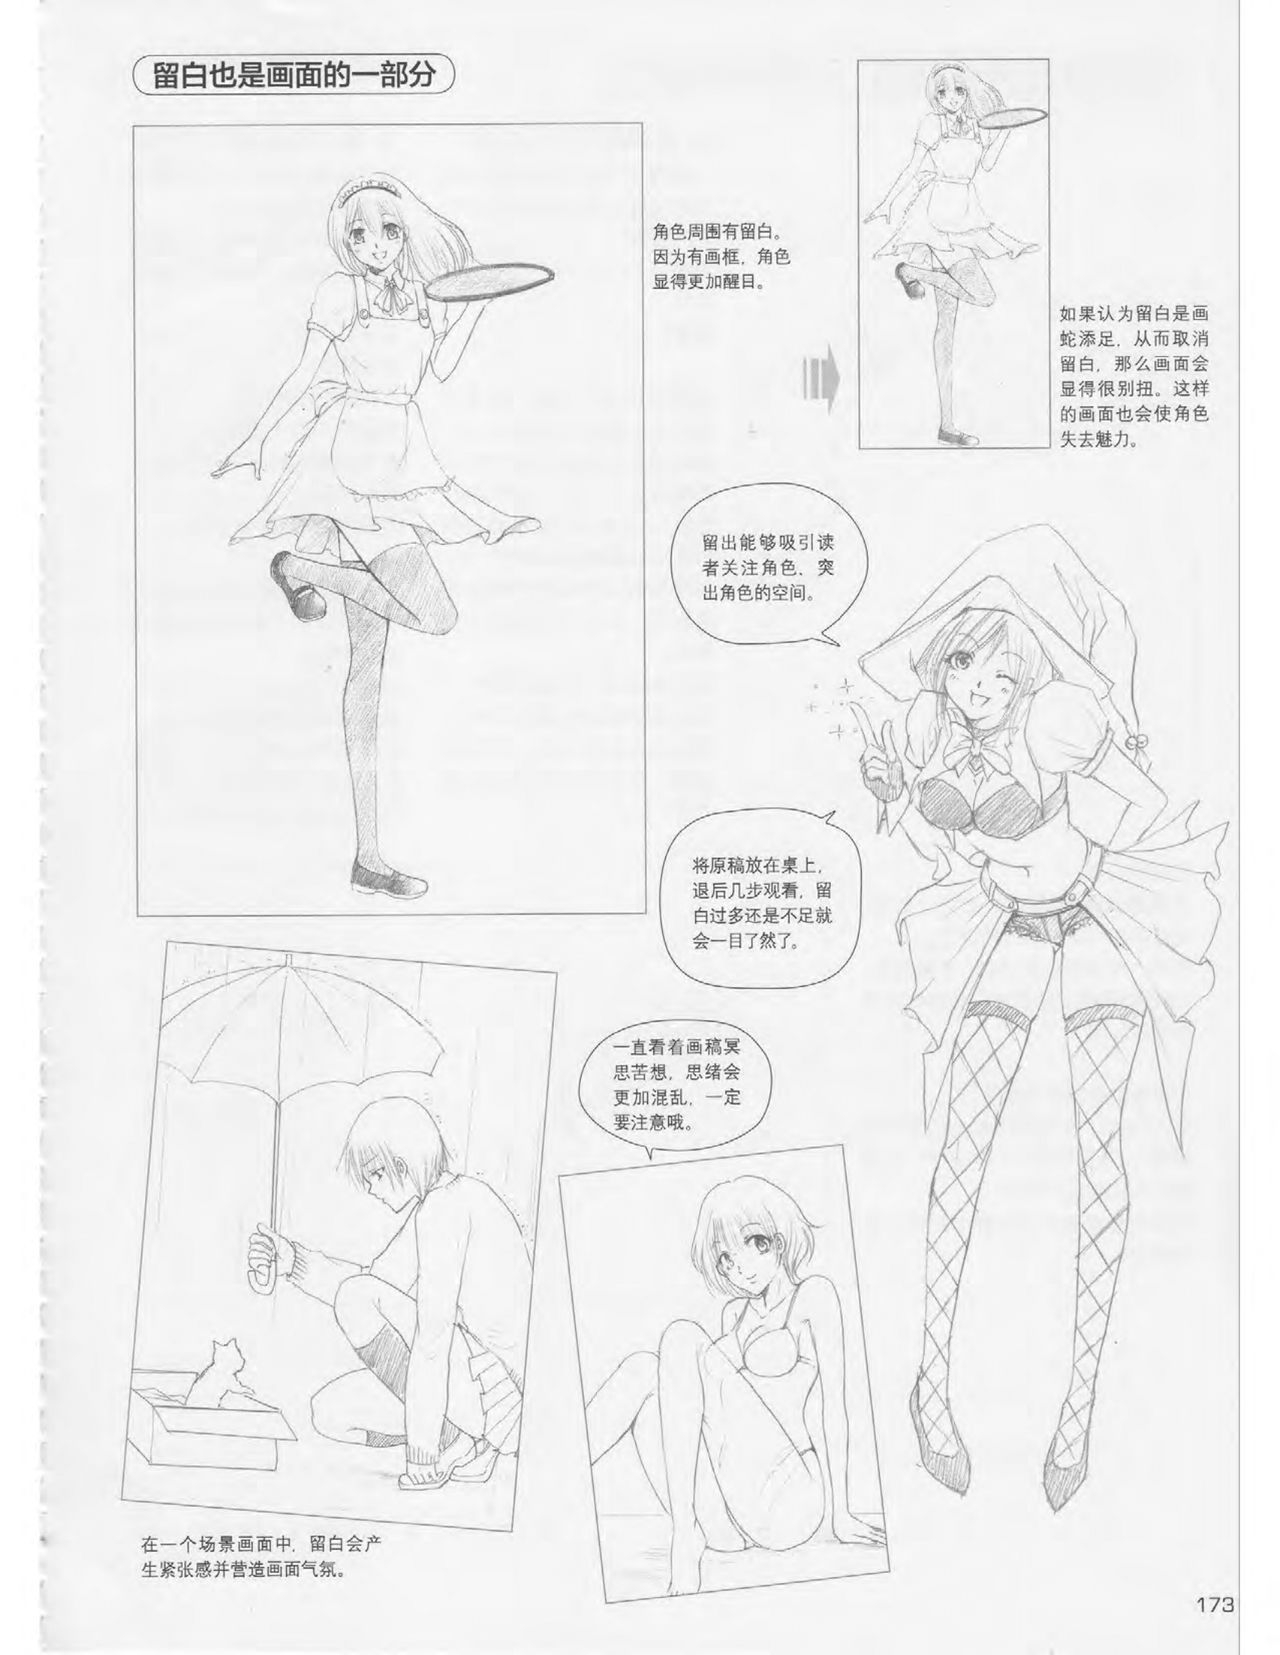 Japanese Manga Master Lecture 3: Lin Akira and Kakumaru Maru Talk About Glamorous Character Modeling 172